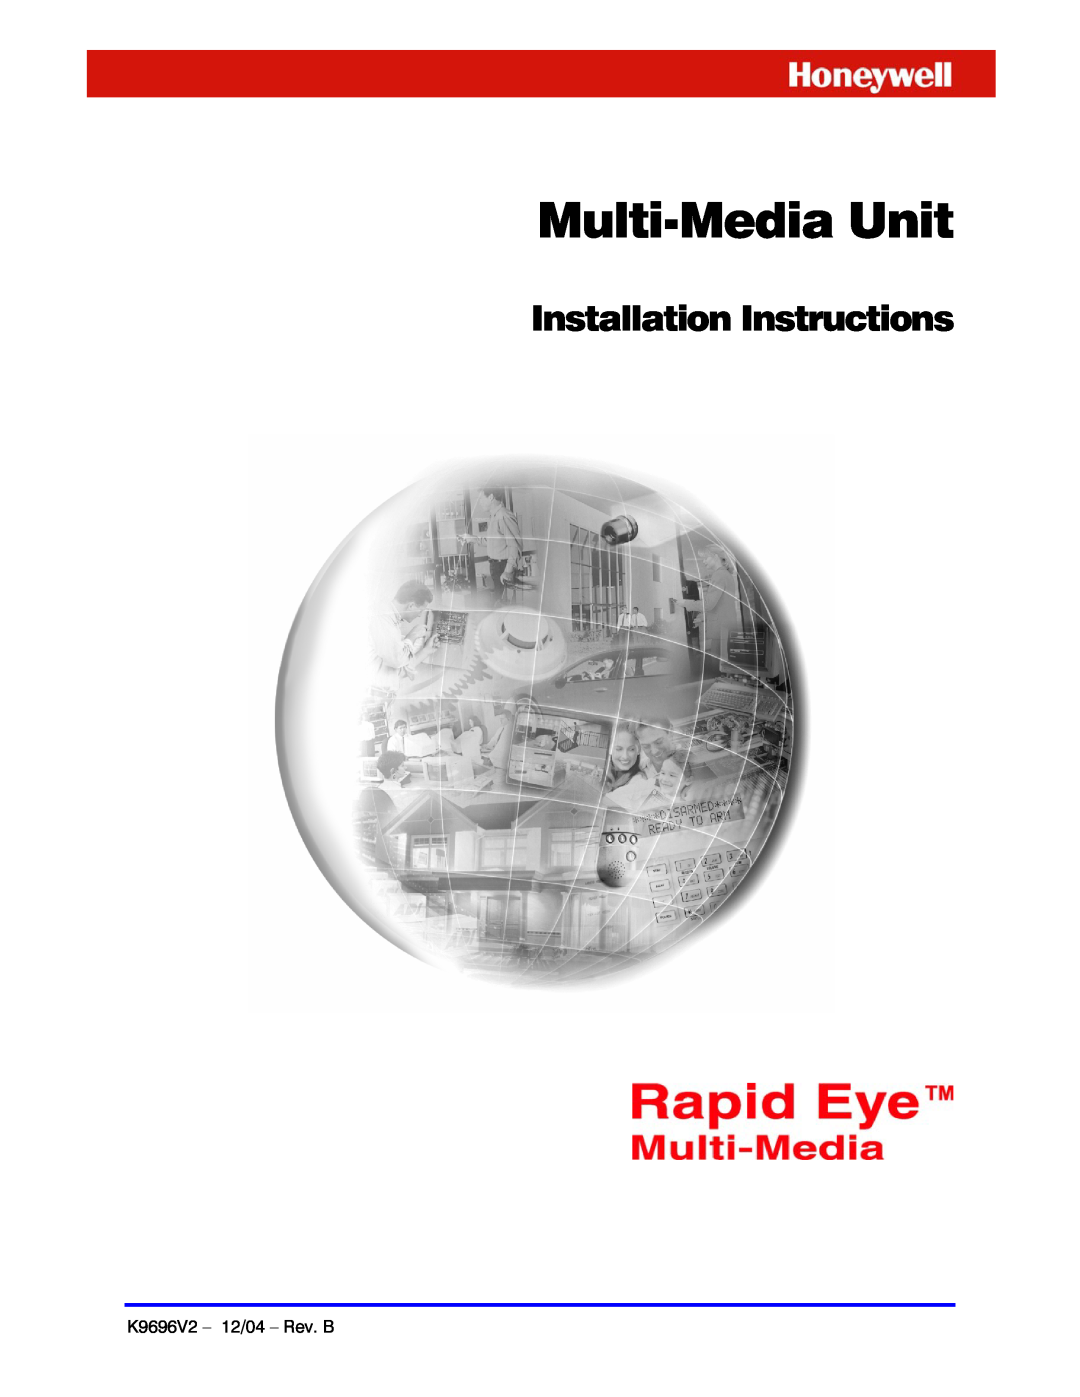 Honeywell K9696V2 installation instructions Multi-MediaUnit, Installation Instructions 